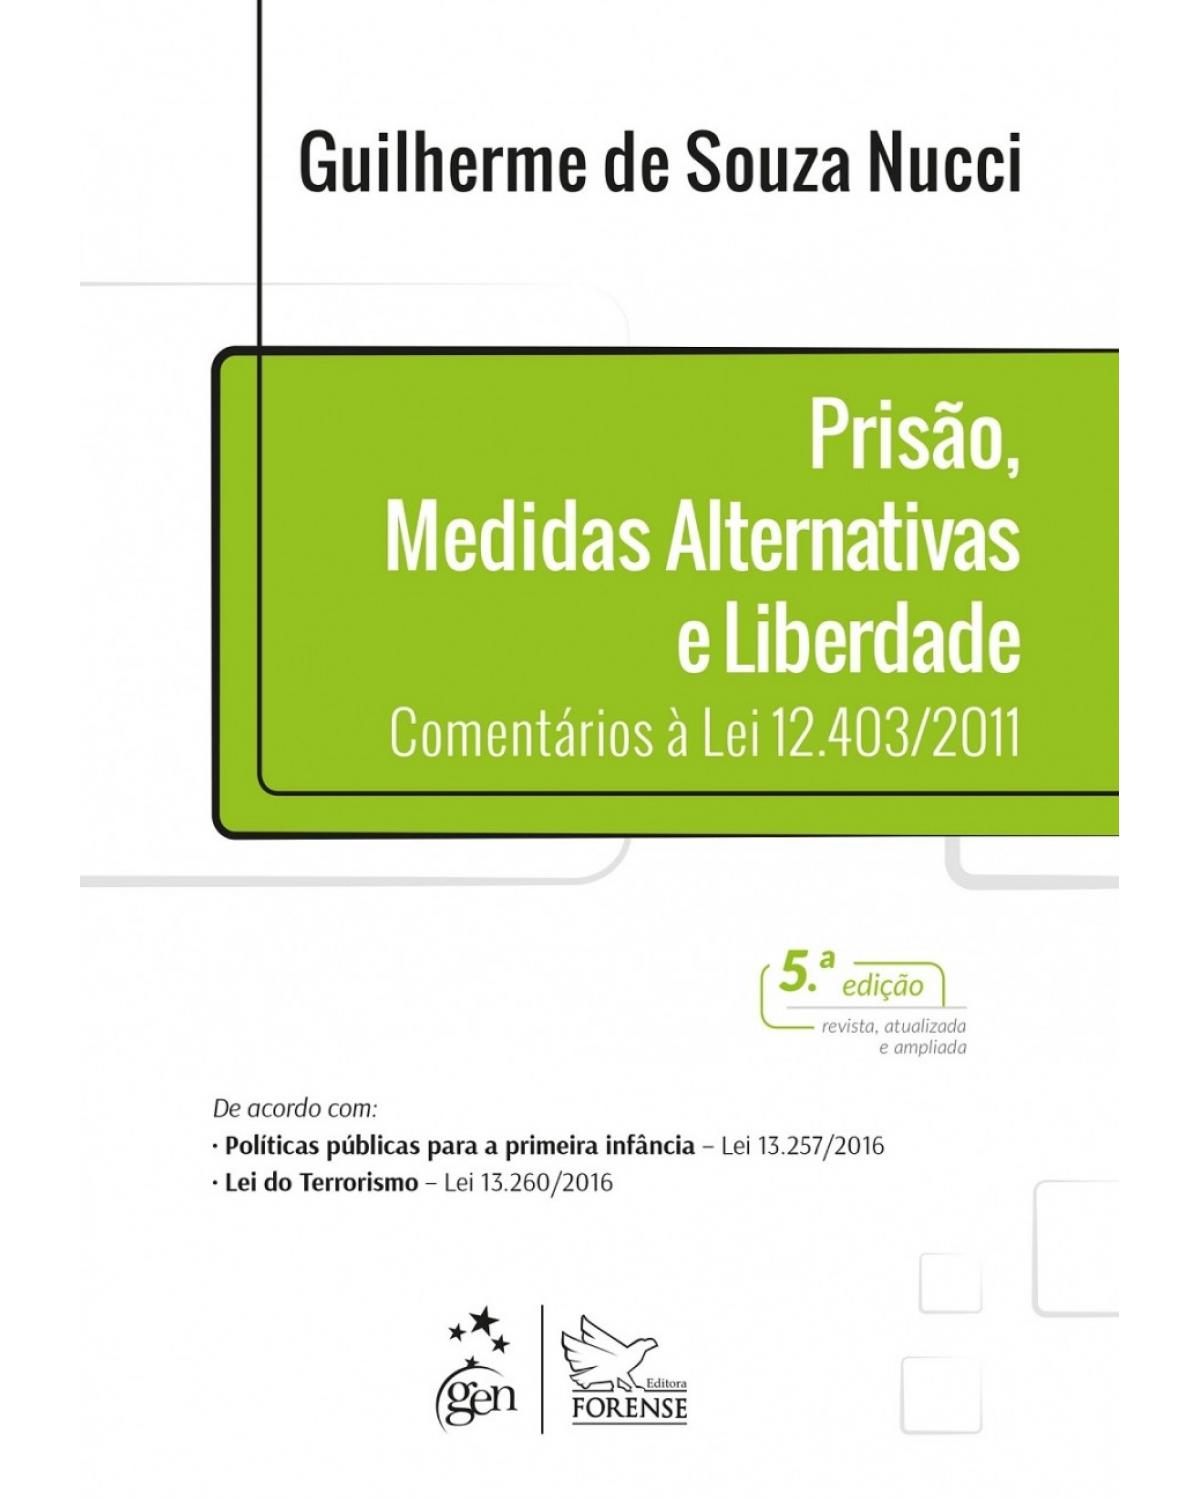 Prisão, medidas alternativas e liberdade - Comentários à lei 12.403/2011 - 5ª Edição | 2017